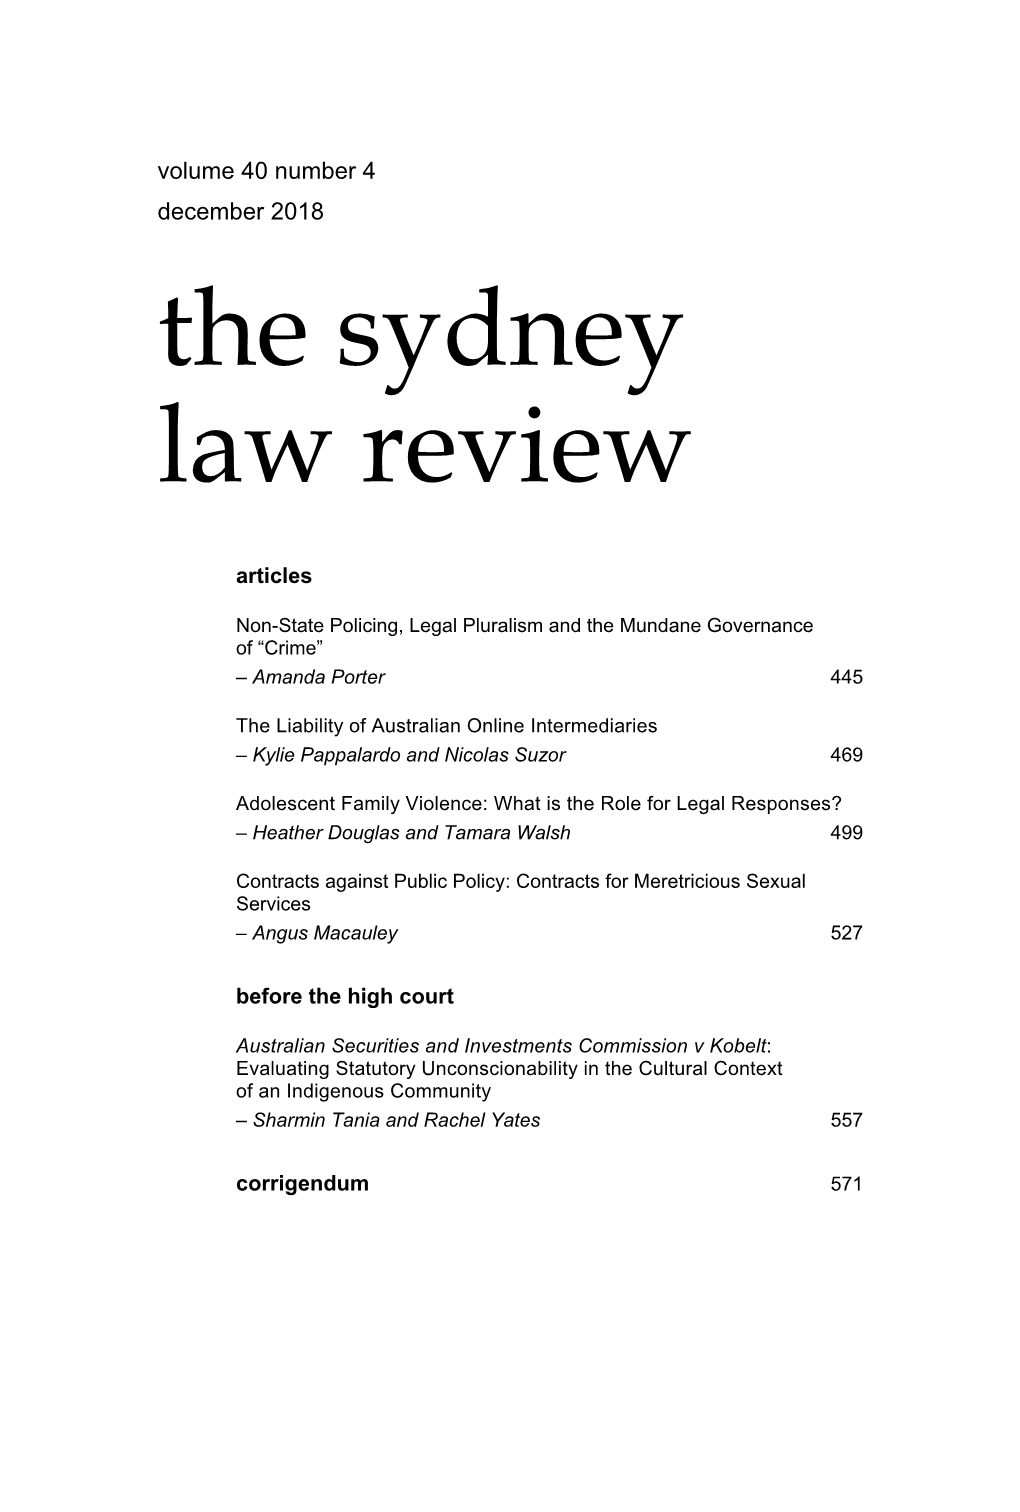 The Sydney Law Review Vol40 Num4